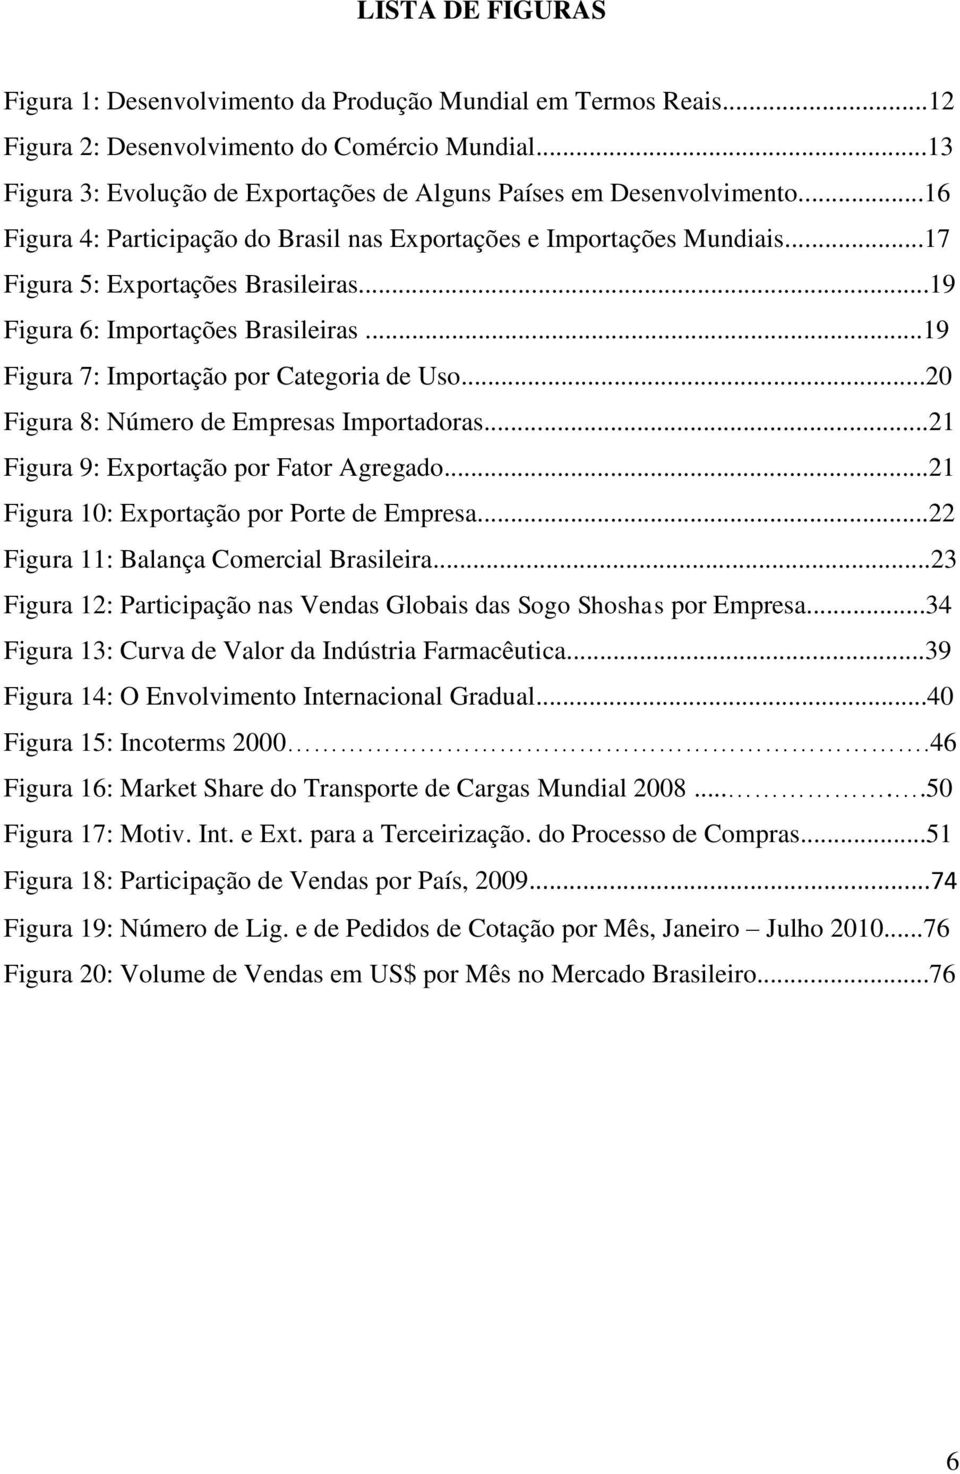 ..19 Figura 6: Importações Brasileiras...19 Figura 7: Importação por Categoria de Uso...20 Figura 8: Número de Empresas Importadoras...21 Figura 9: Exportação por Fator Agregado.